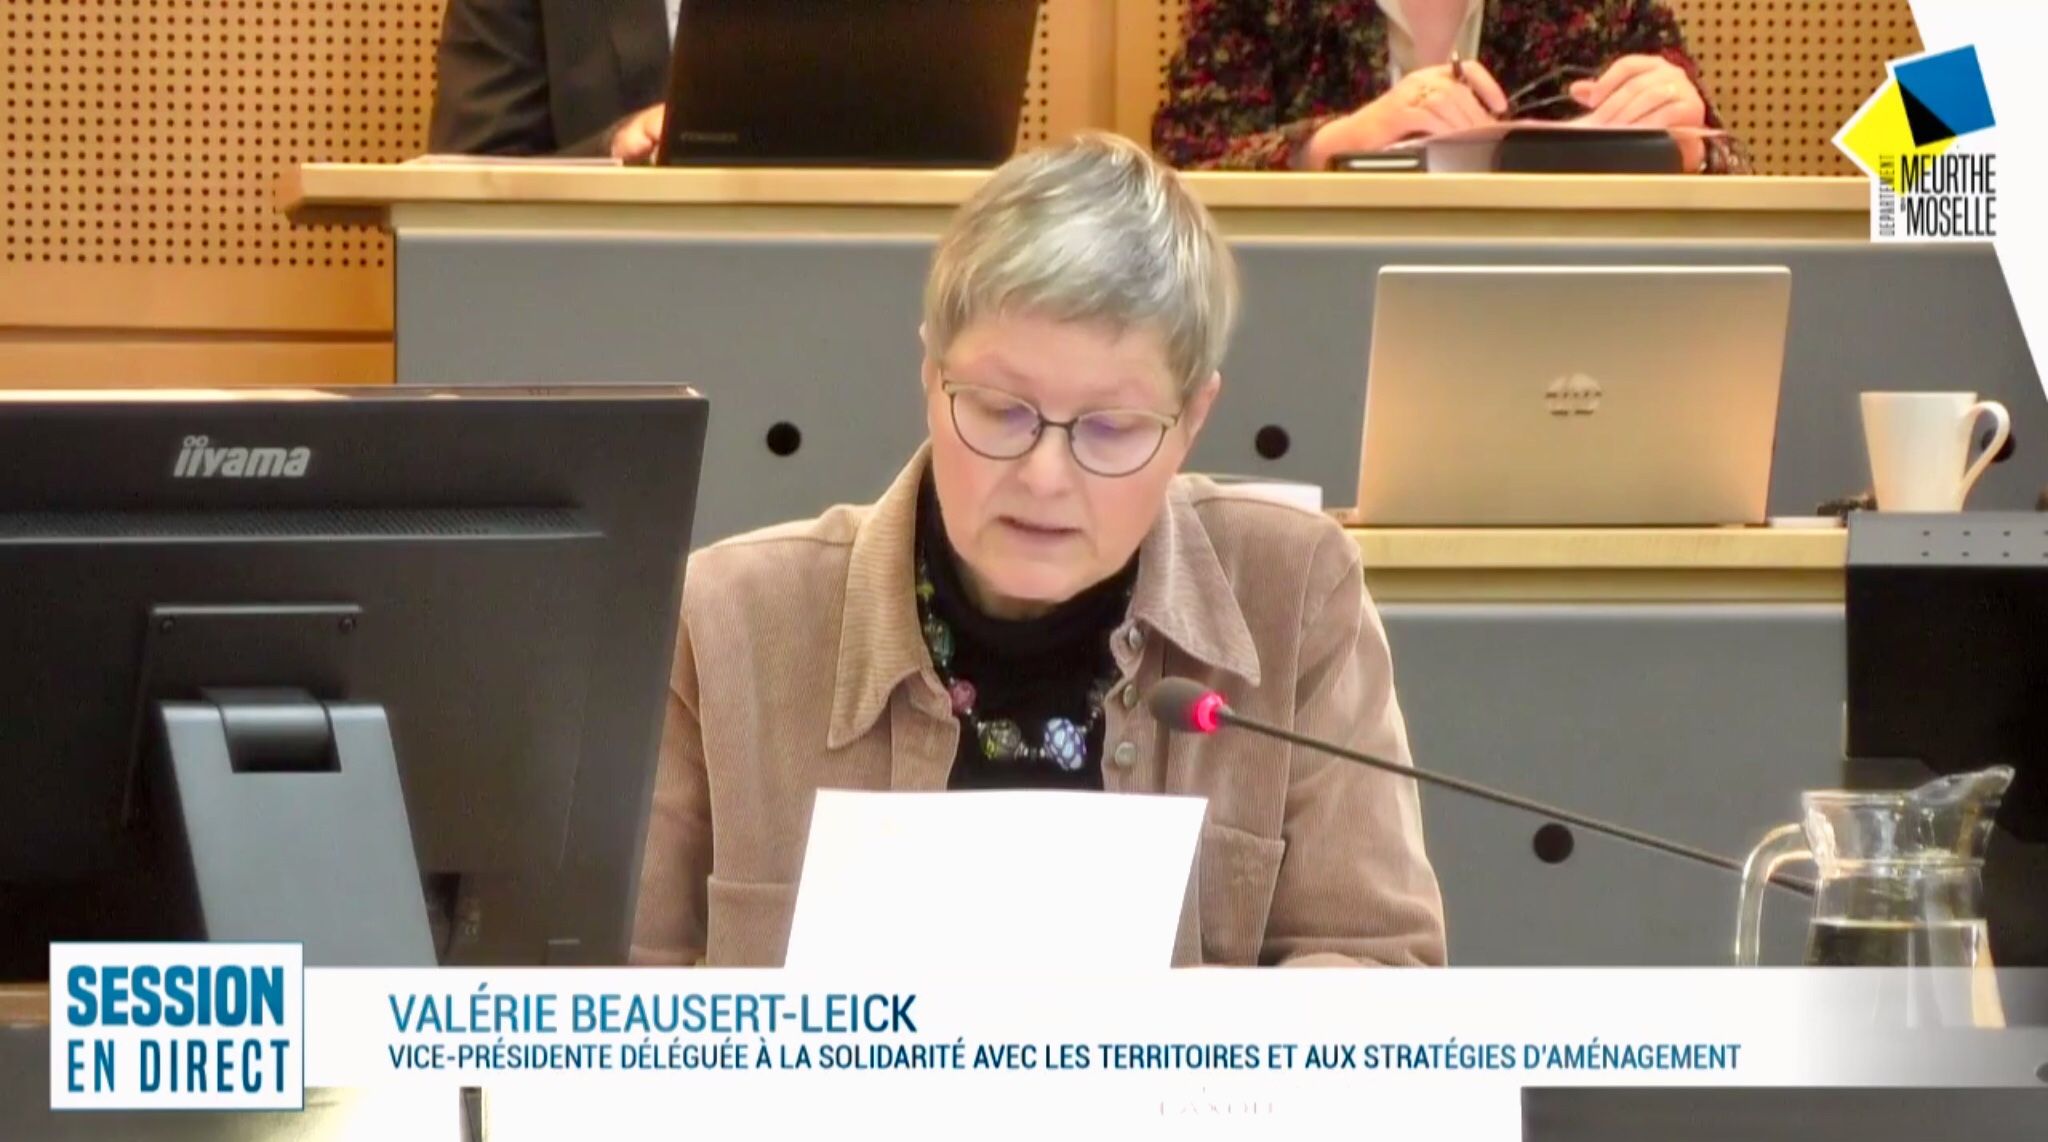 Question de Valérie BEAUSERT-LEICK sur le pacte financier entre l’Etat et les collectivités territoriales (Pacte de Cahors)